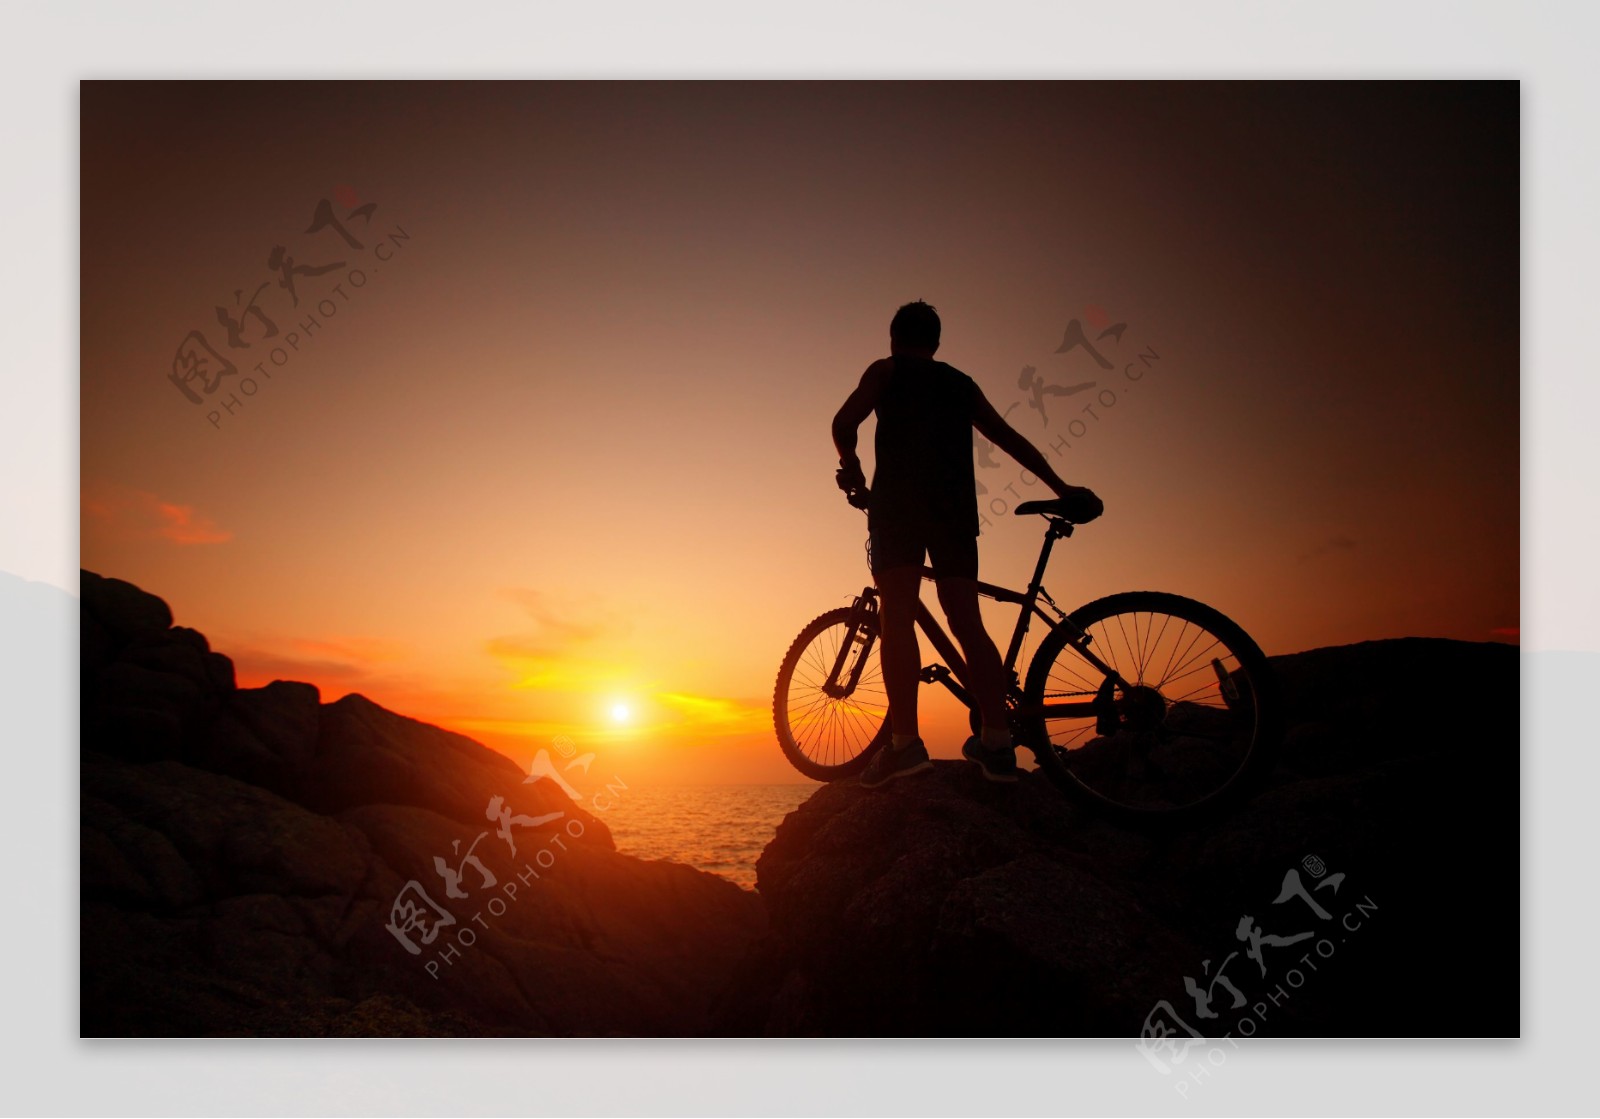 夕阳下的单车人物图片